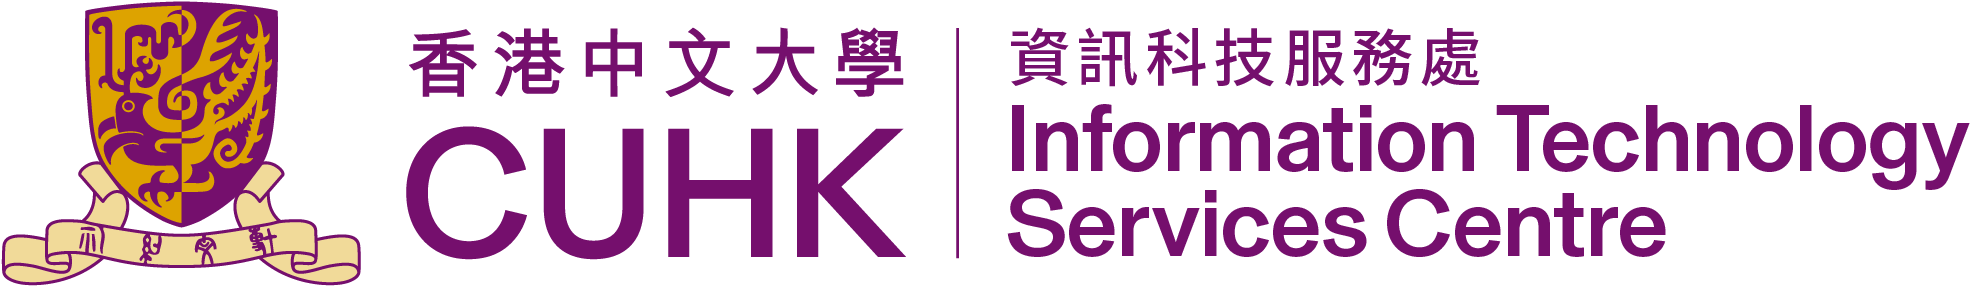 香港中文大學資訊科技服務處